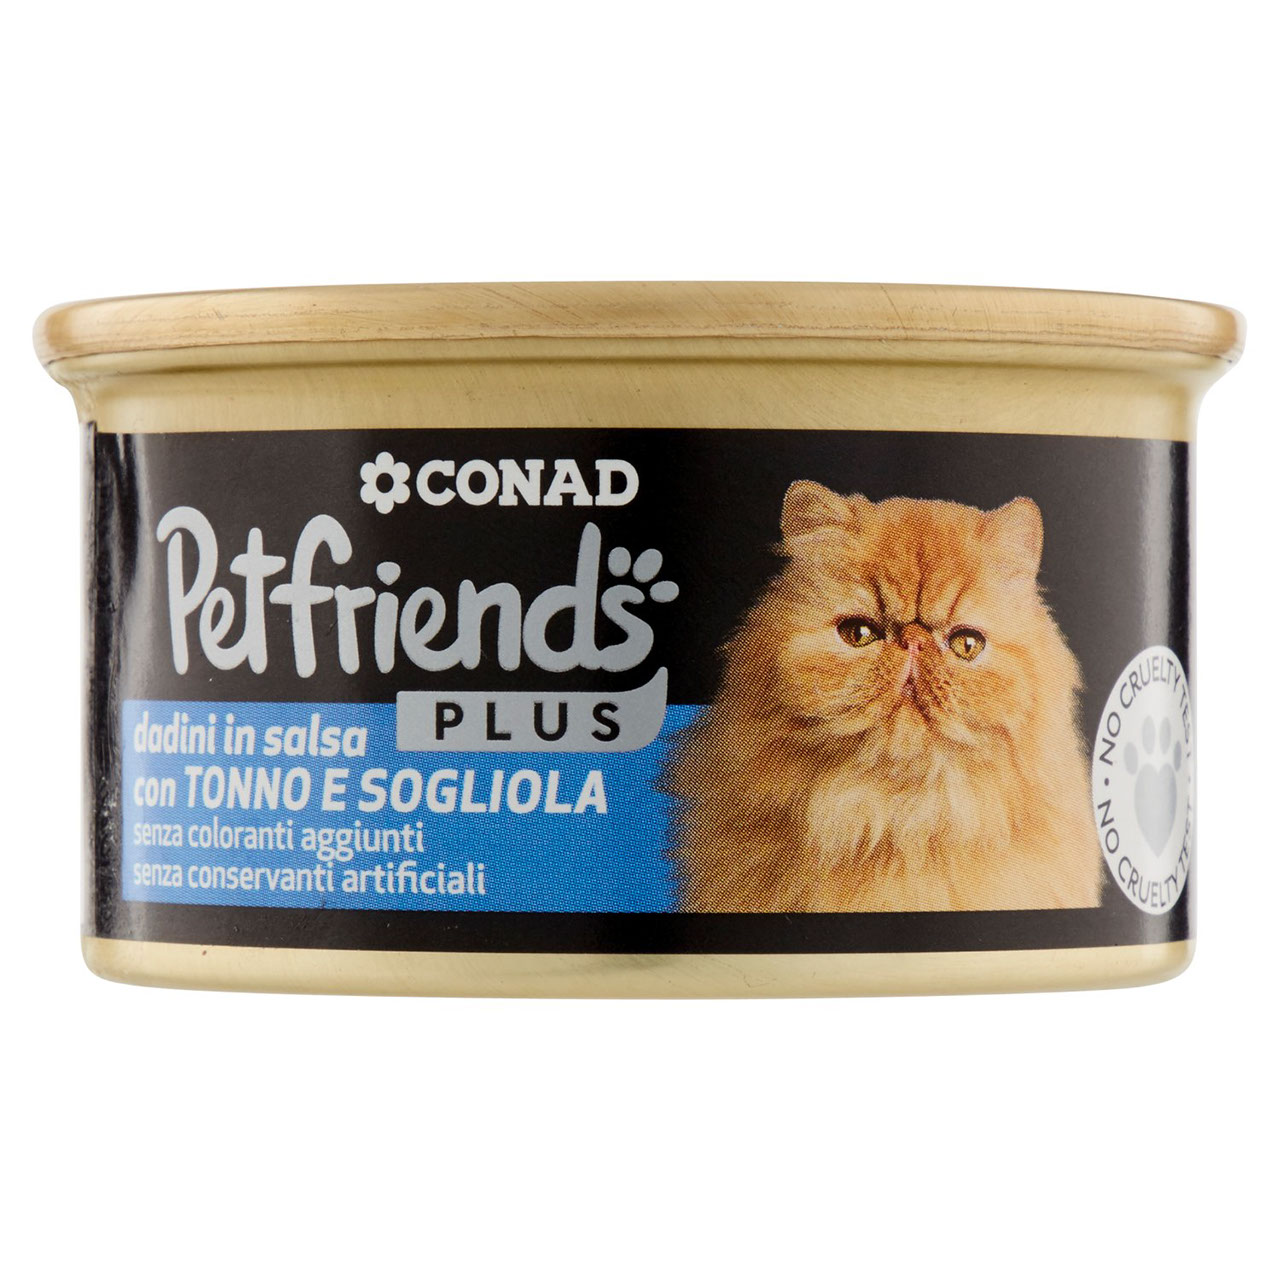 Petfriends Plus Dadini Tonno e Sogliola 85g Conad